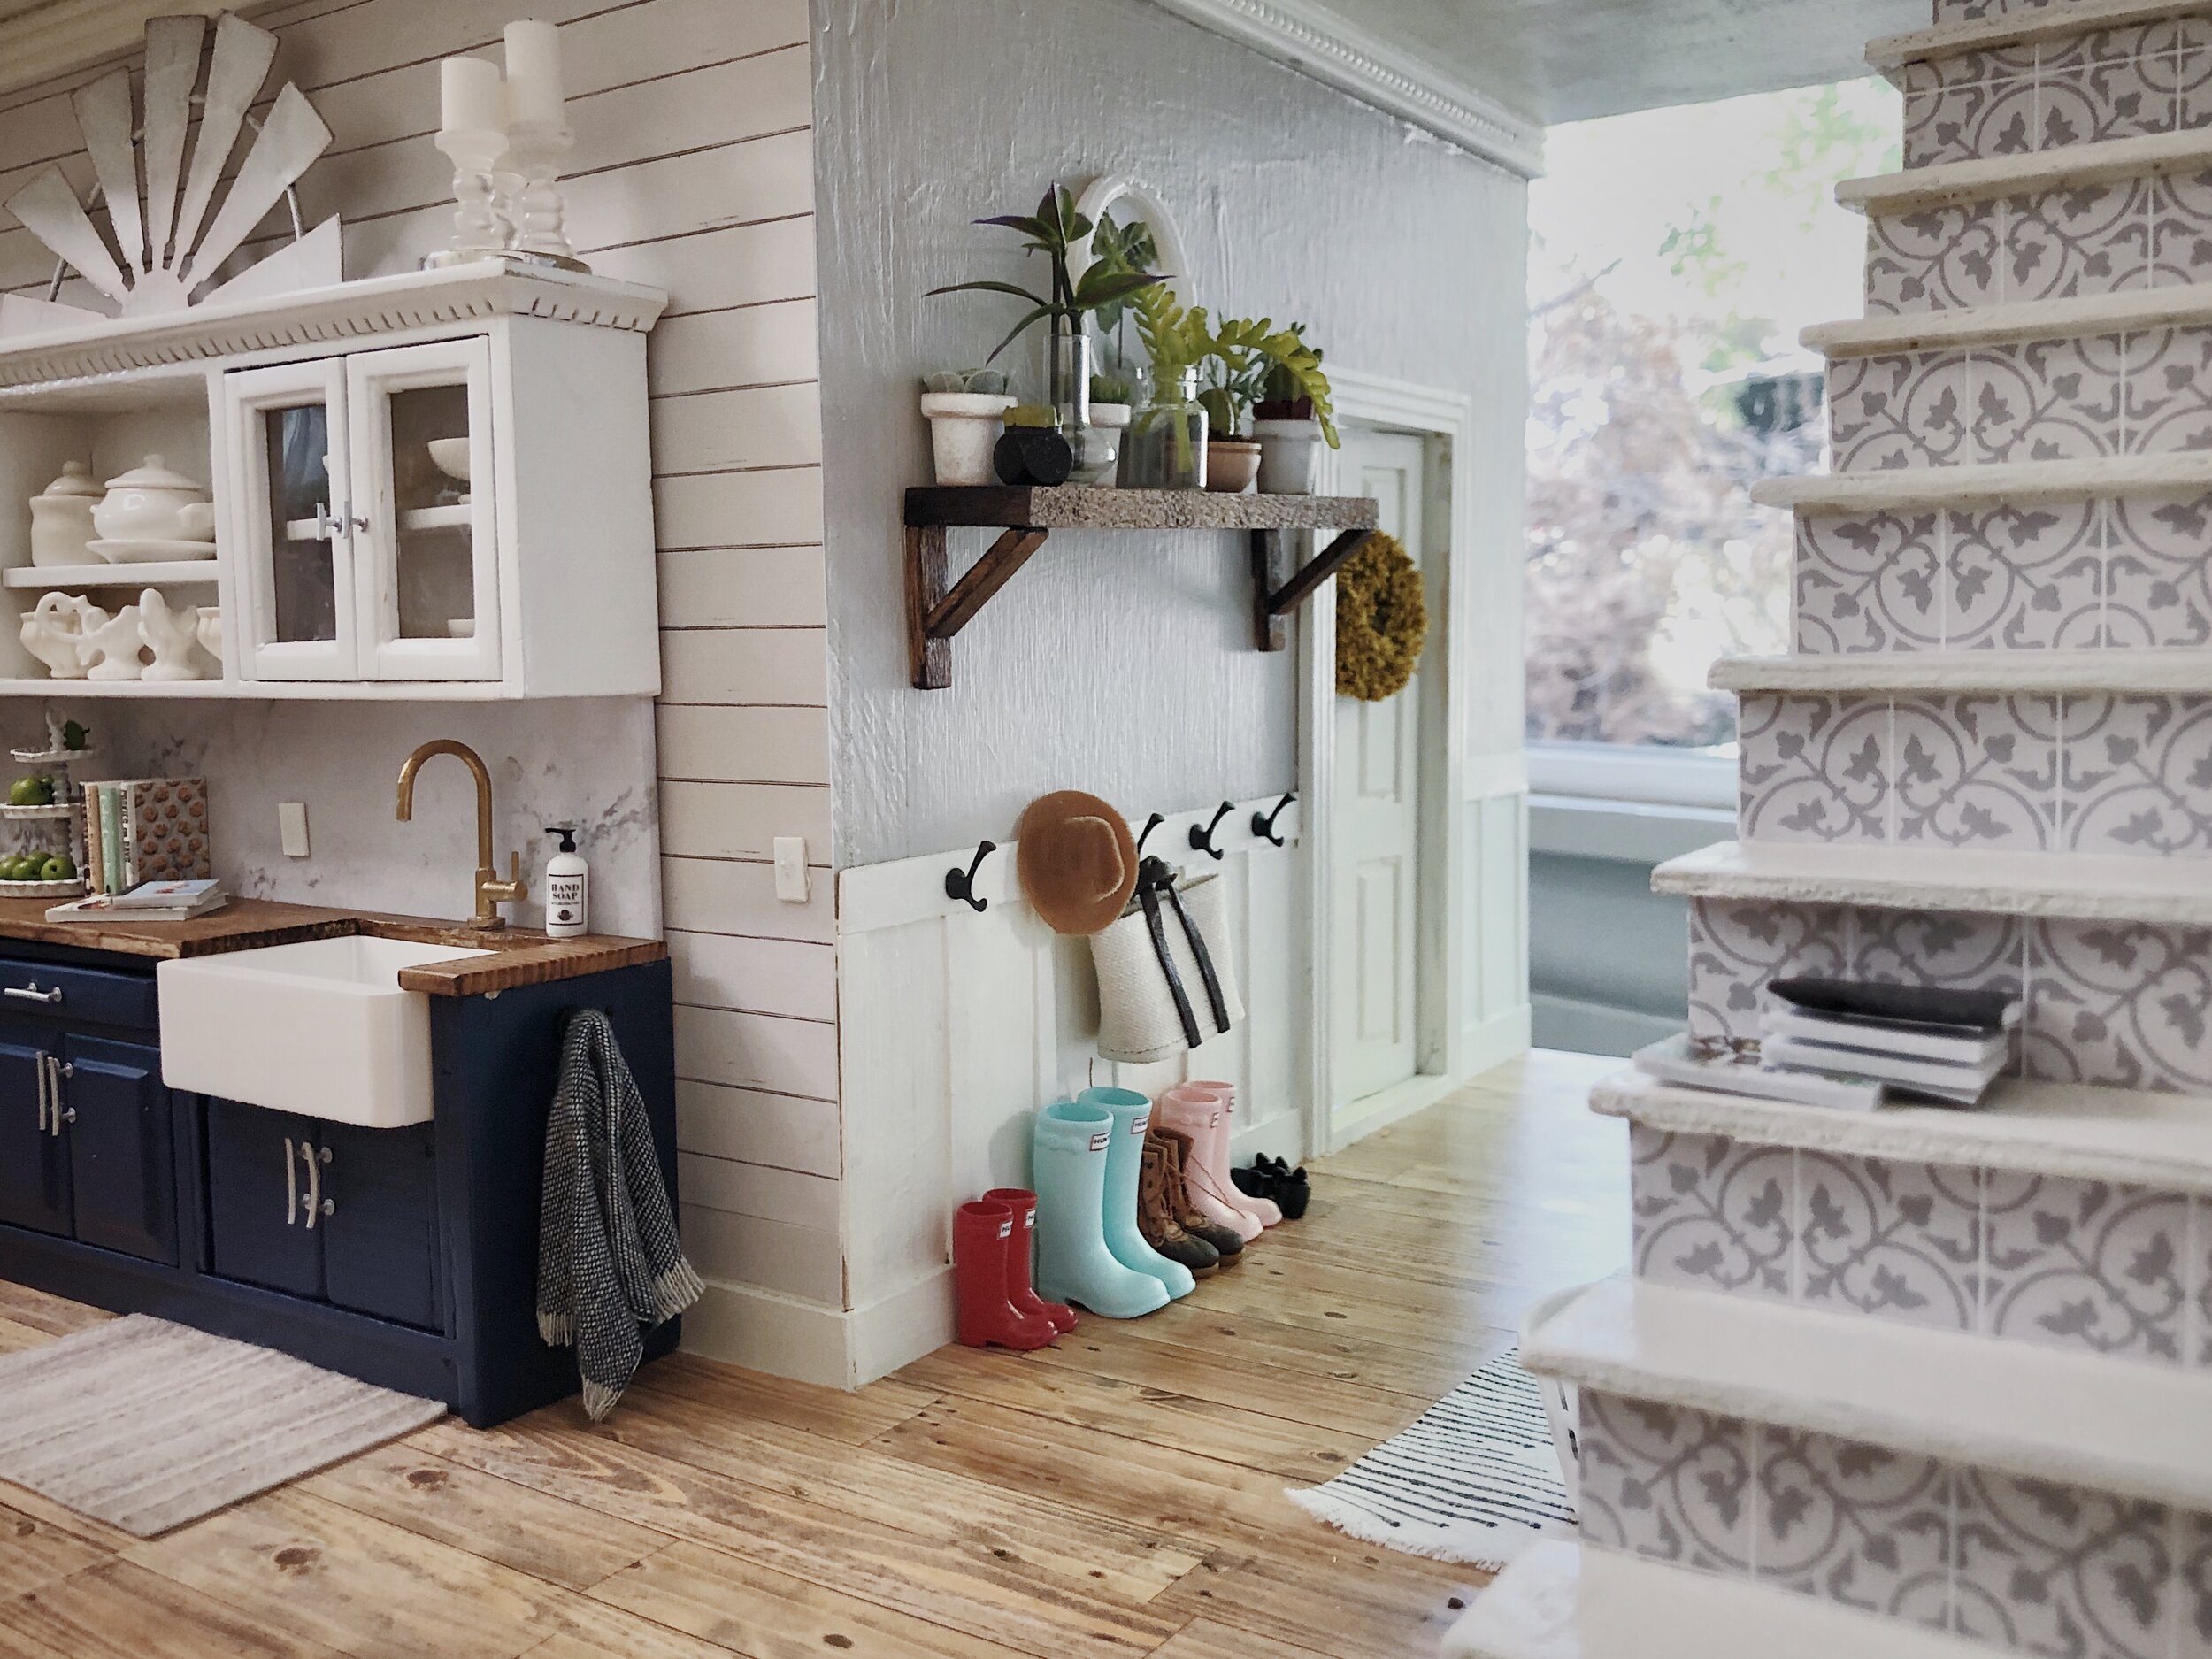 Teeny tiny laundry room #dollhouse #miniature, dollhouse renovation